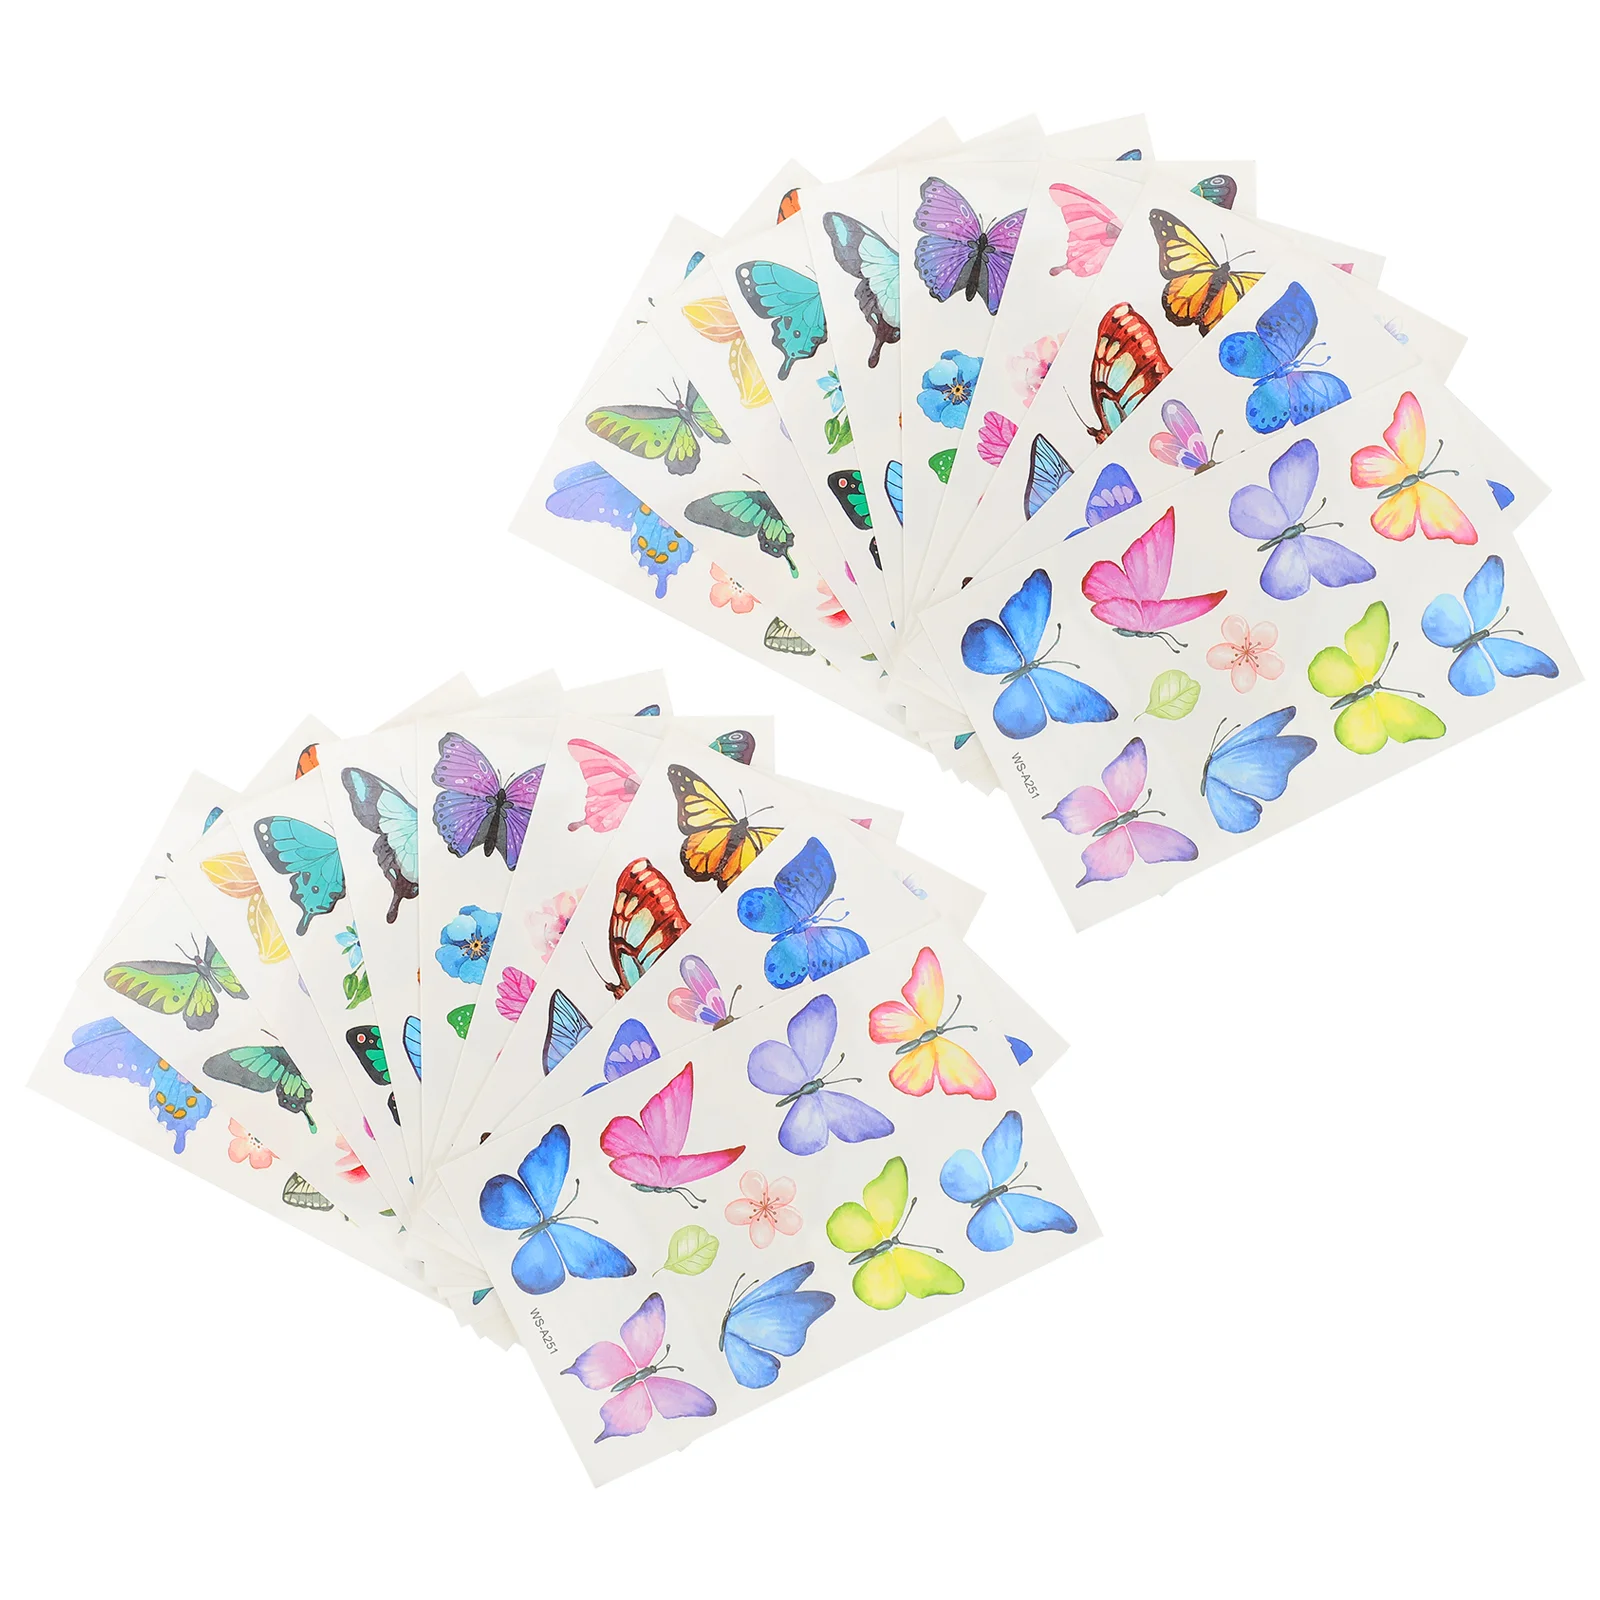 

20 Sheets Butterfly Stickers Kids Tattoos for Glitter Girls Women Butterflies Temporary